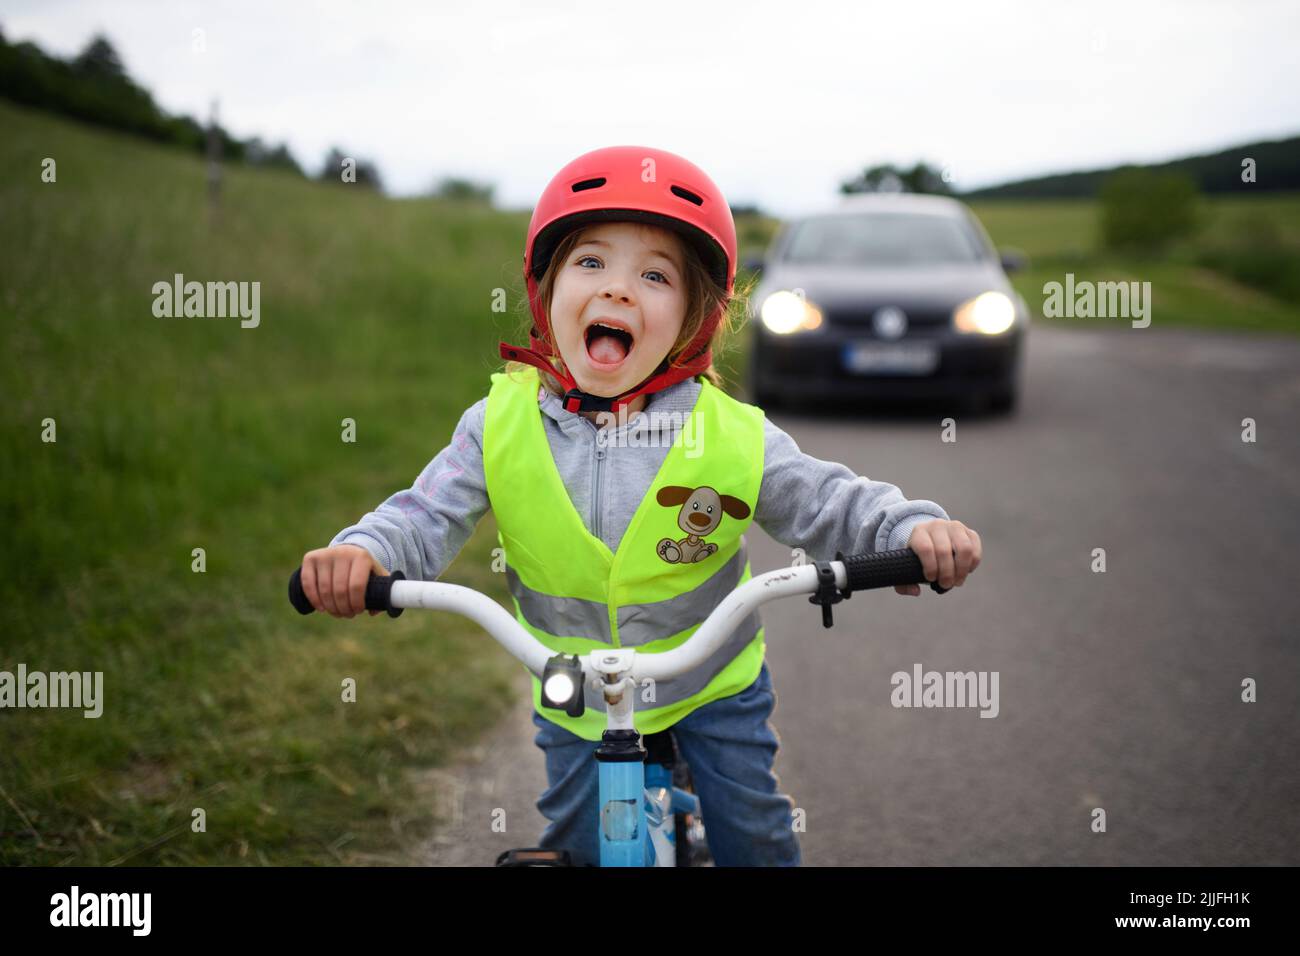 Ritratto della bambina eccitata in riflettente giubbotto che guida in bicicletta su strada con l'auto dietro di lei, concetto di educazione alla sicurezza stradale. Foto Stock